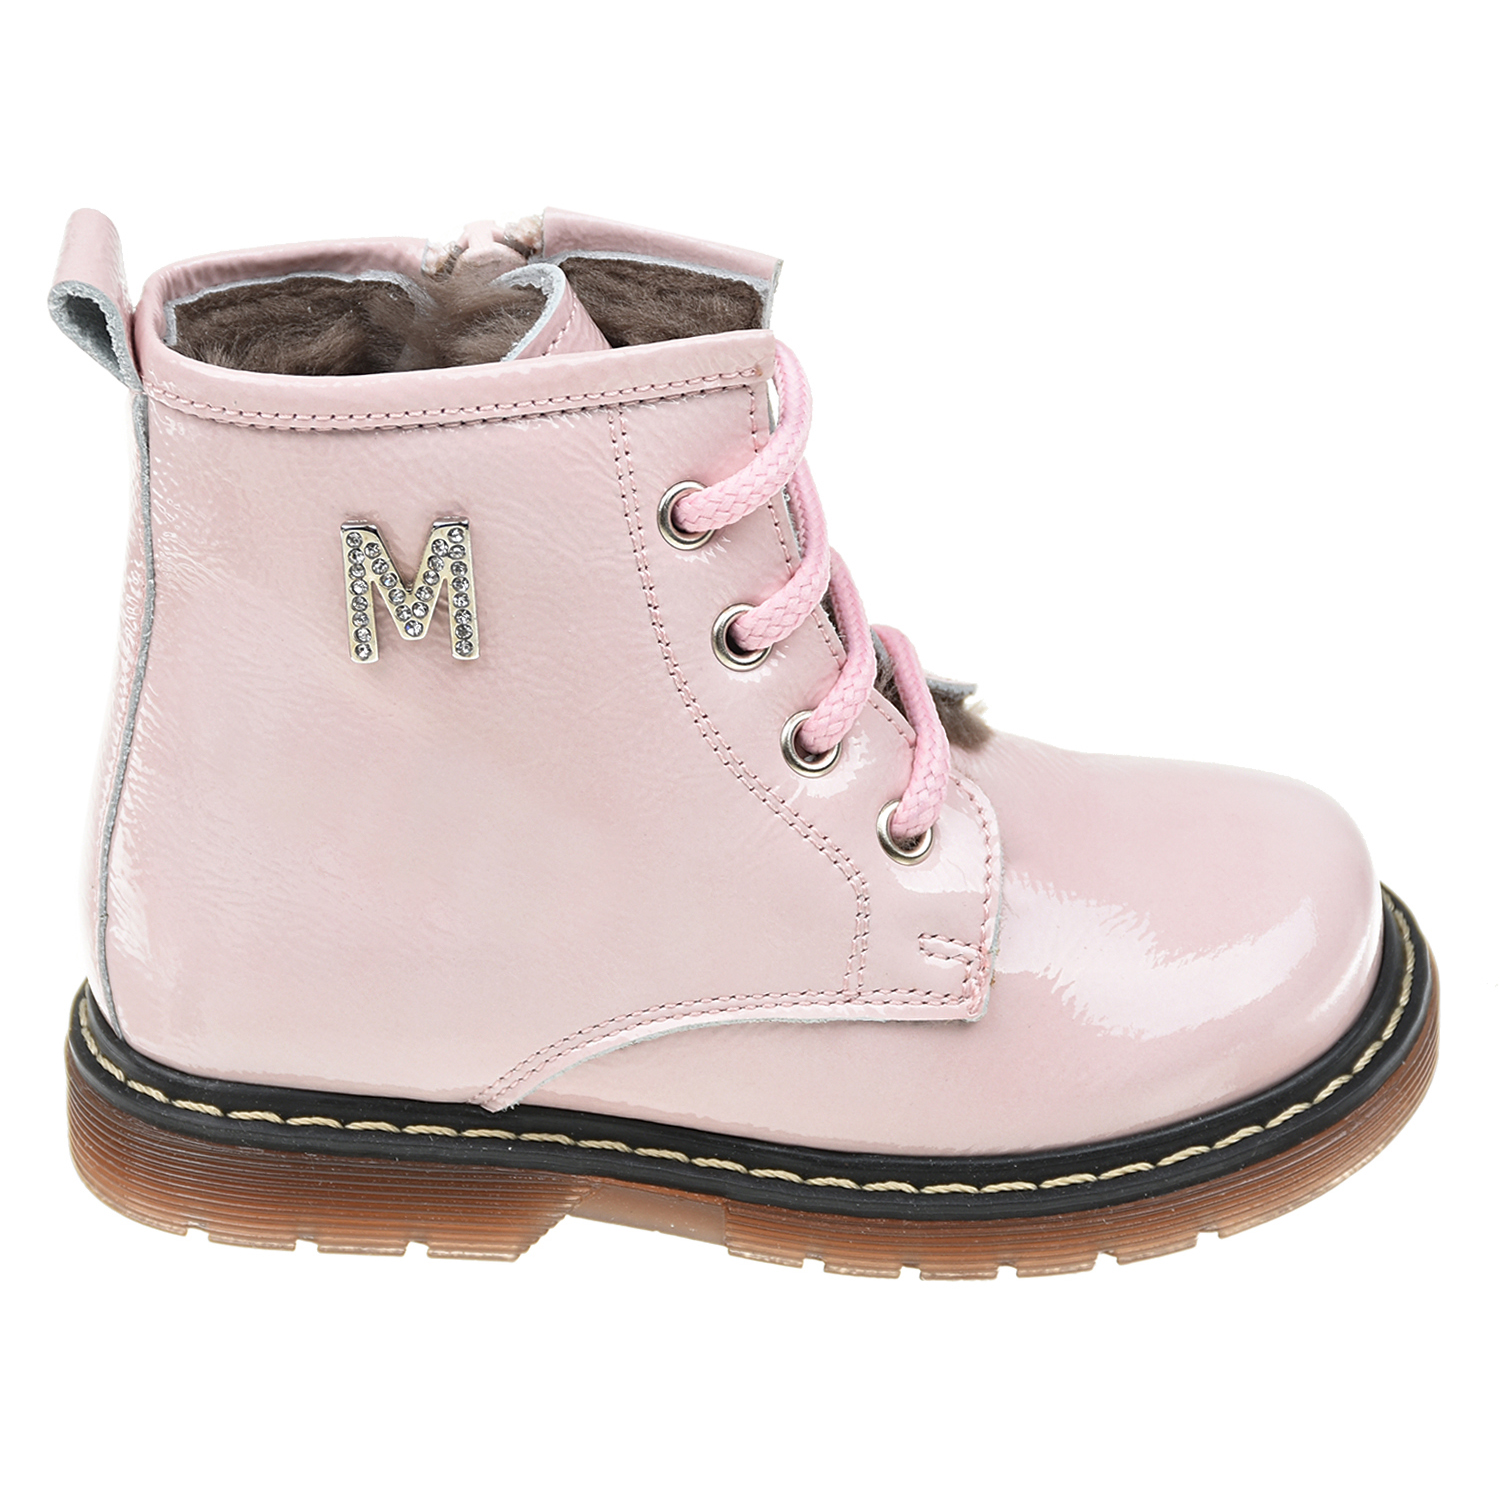 Розовые кожаные ботинки с декором из стразов Monnalisa детские, размер 22, цвет розовый - фото 2